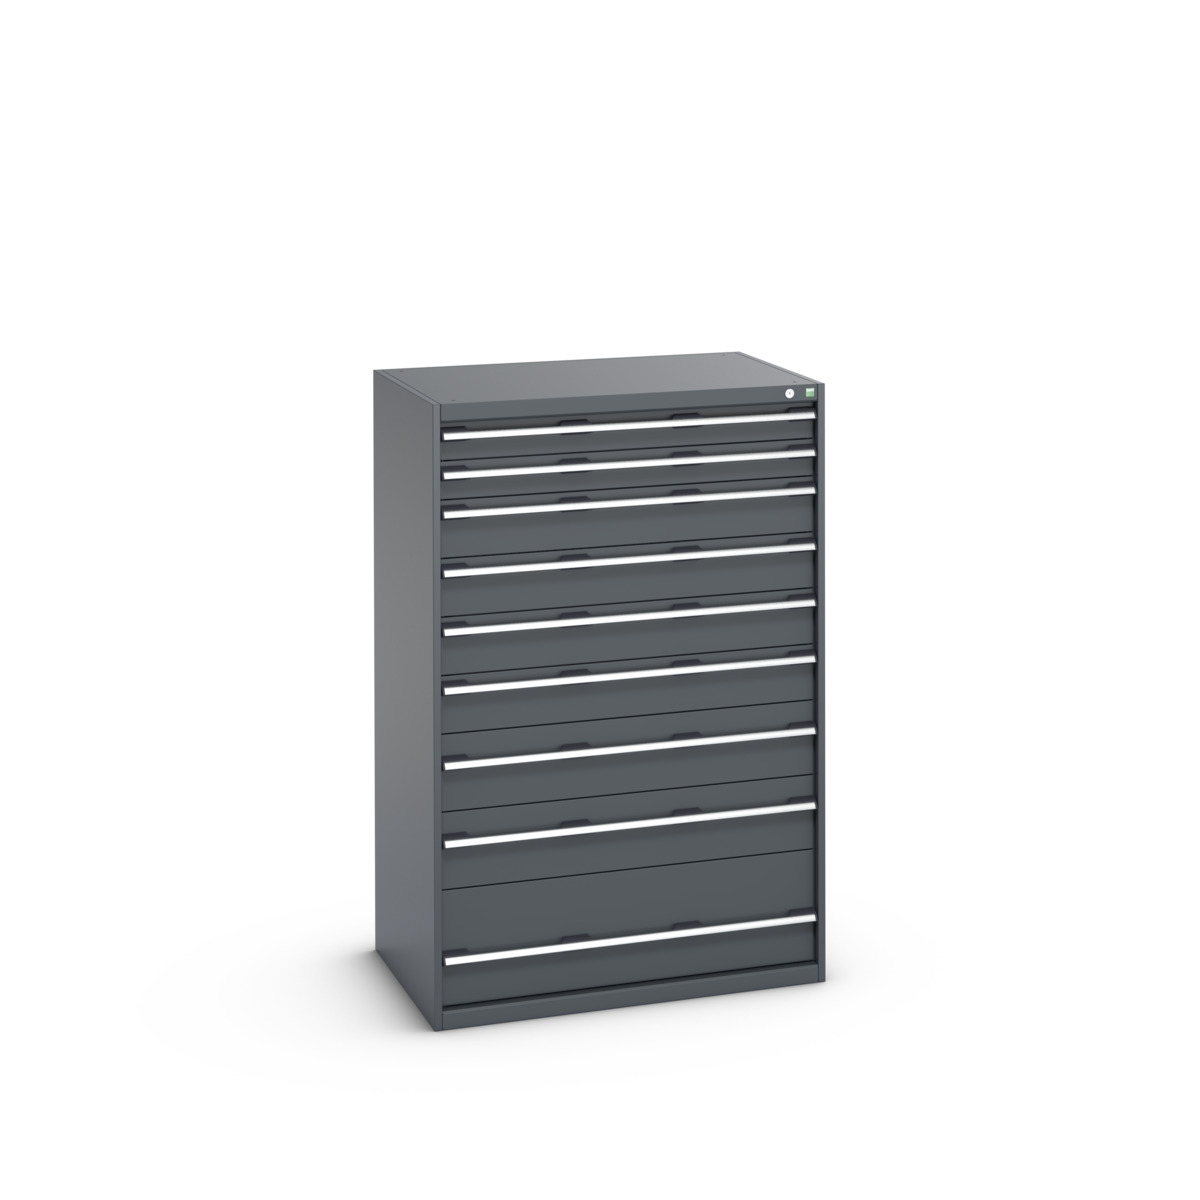 40029036.77V - cubio drawer cabinet